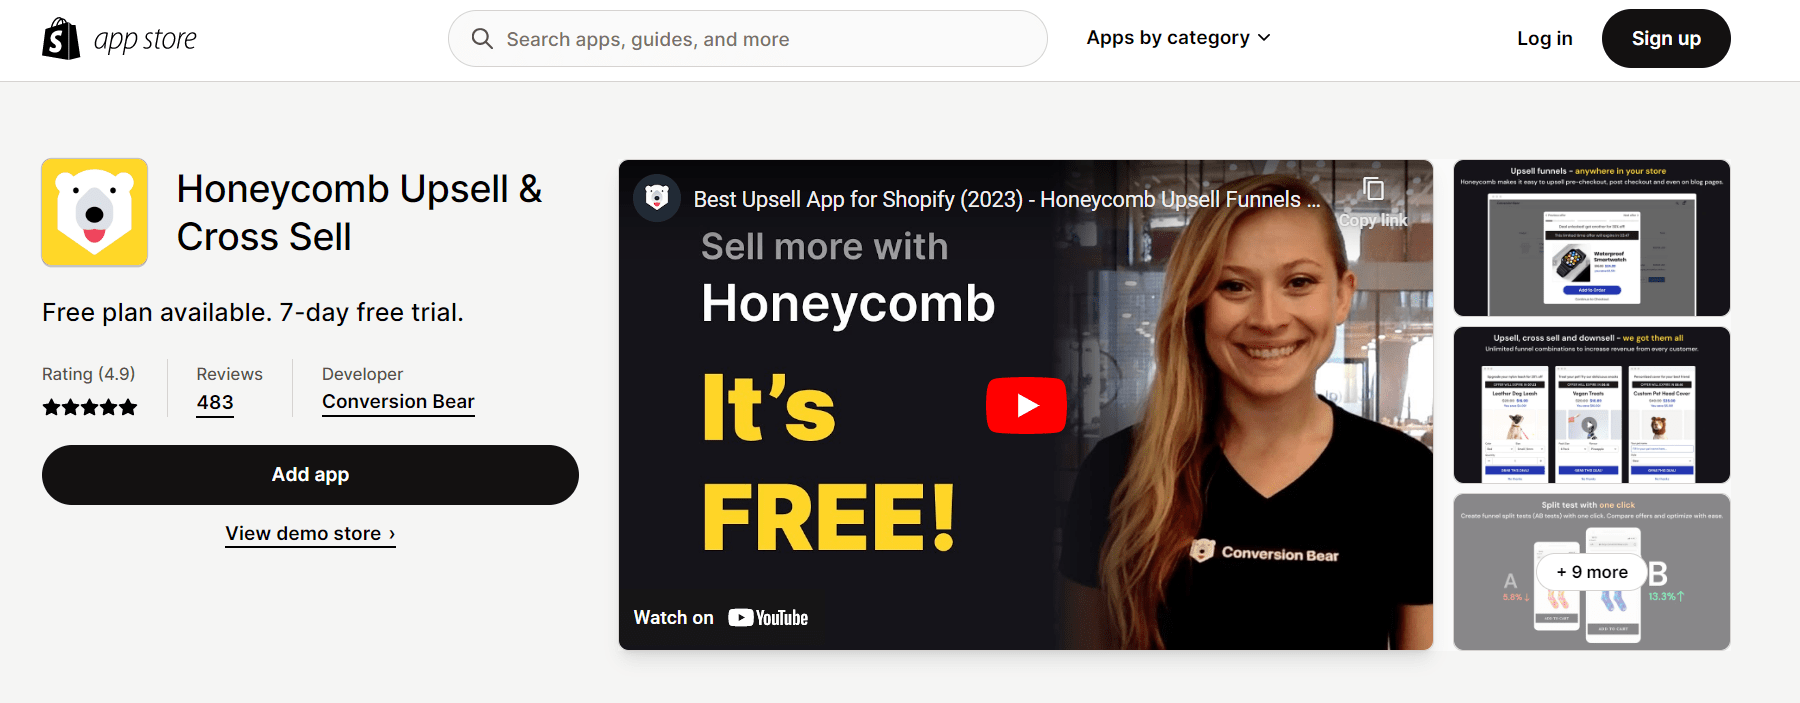 蜂巢追加销售